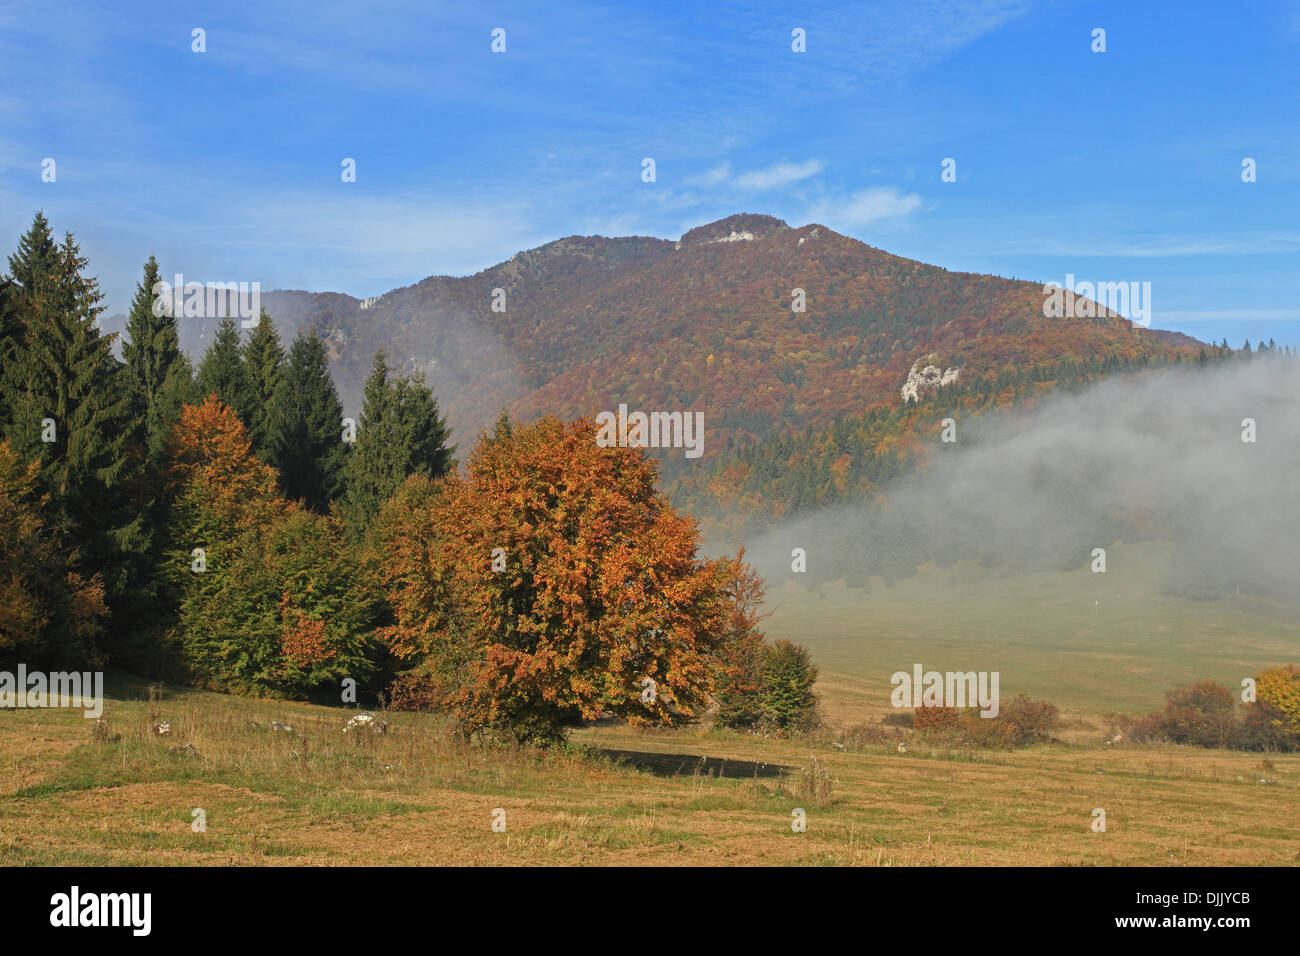 Vista della montagna da Sip Zaskovske sedlo con nuvole di nebbia al di sopra di motivi, NP Velka Fatra, Slovacchia. Foto Stock